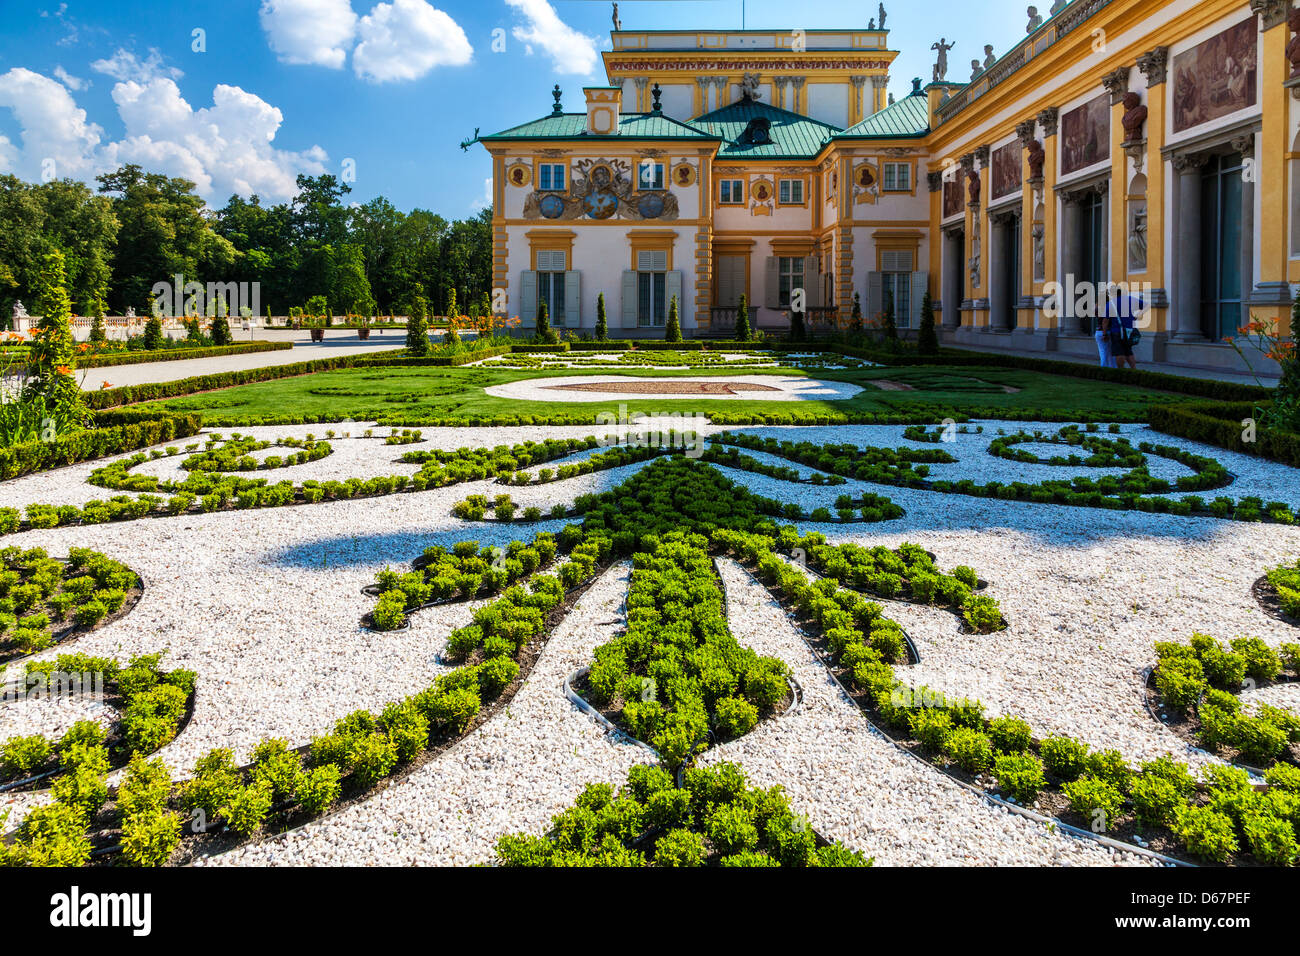 Die angelegten Gärten des 17. Jahrhunderts Wilanów königlichen Palast in Warschau, Polen. Stockfoto